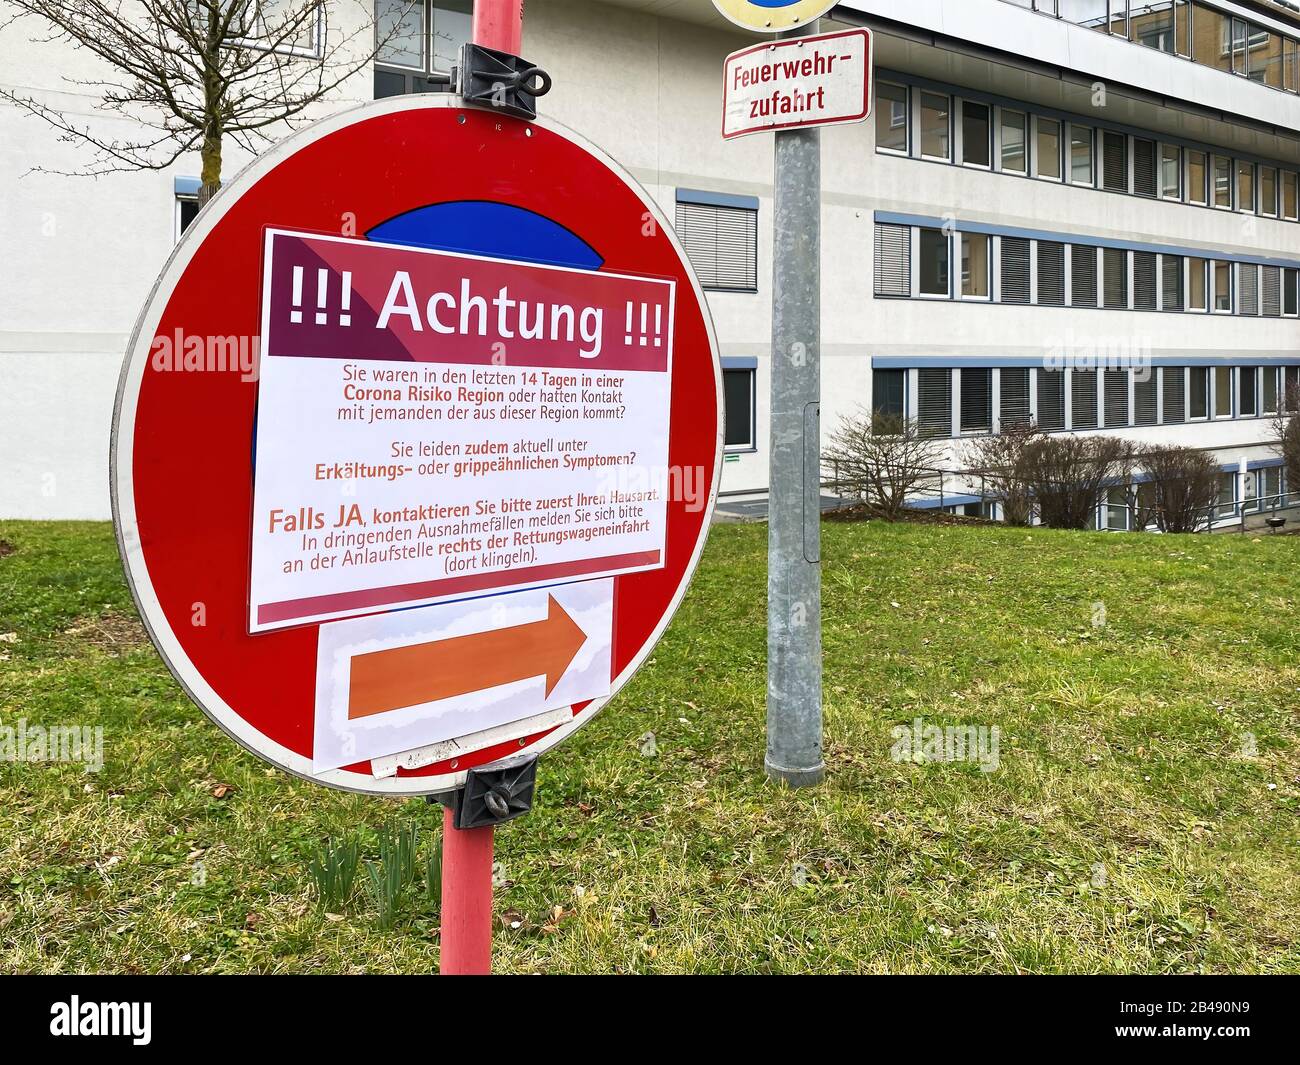 Attenzione Entra in un Ospedale tedesco - Coronavirus Covid-19 Foto Stock